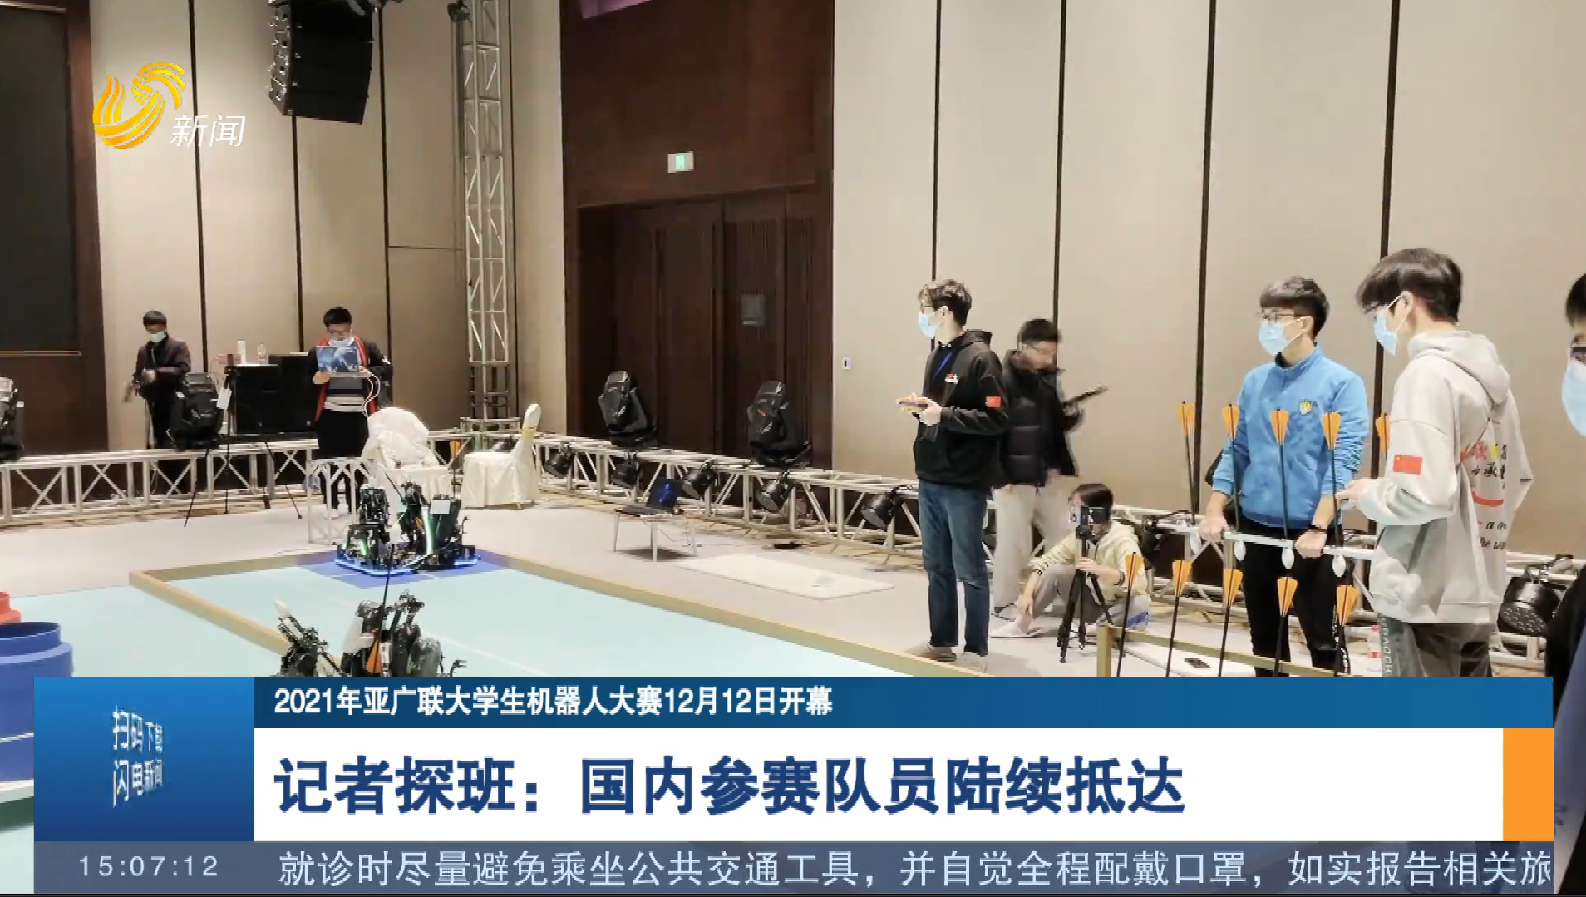 【2021年亚广联大学生机器人大赛12月12日开幕】记者探班：国内参赛队员陆续抵达